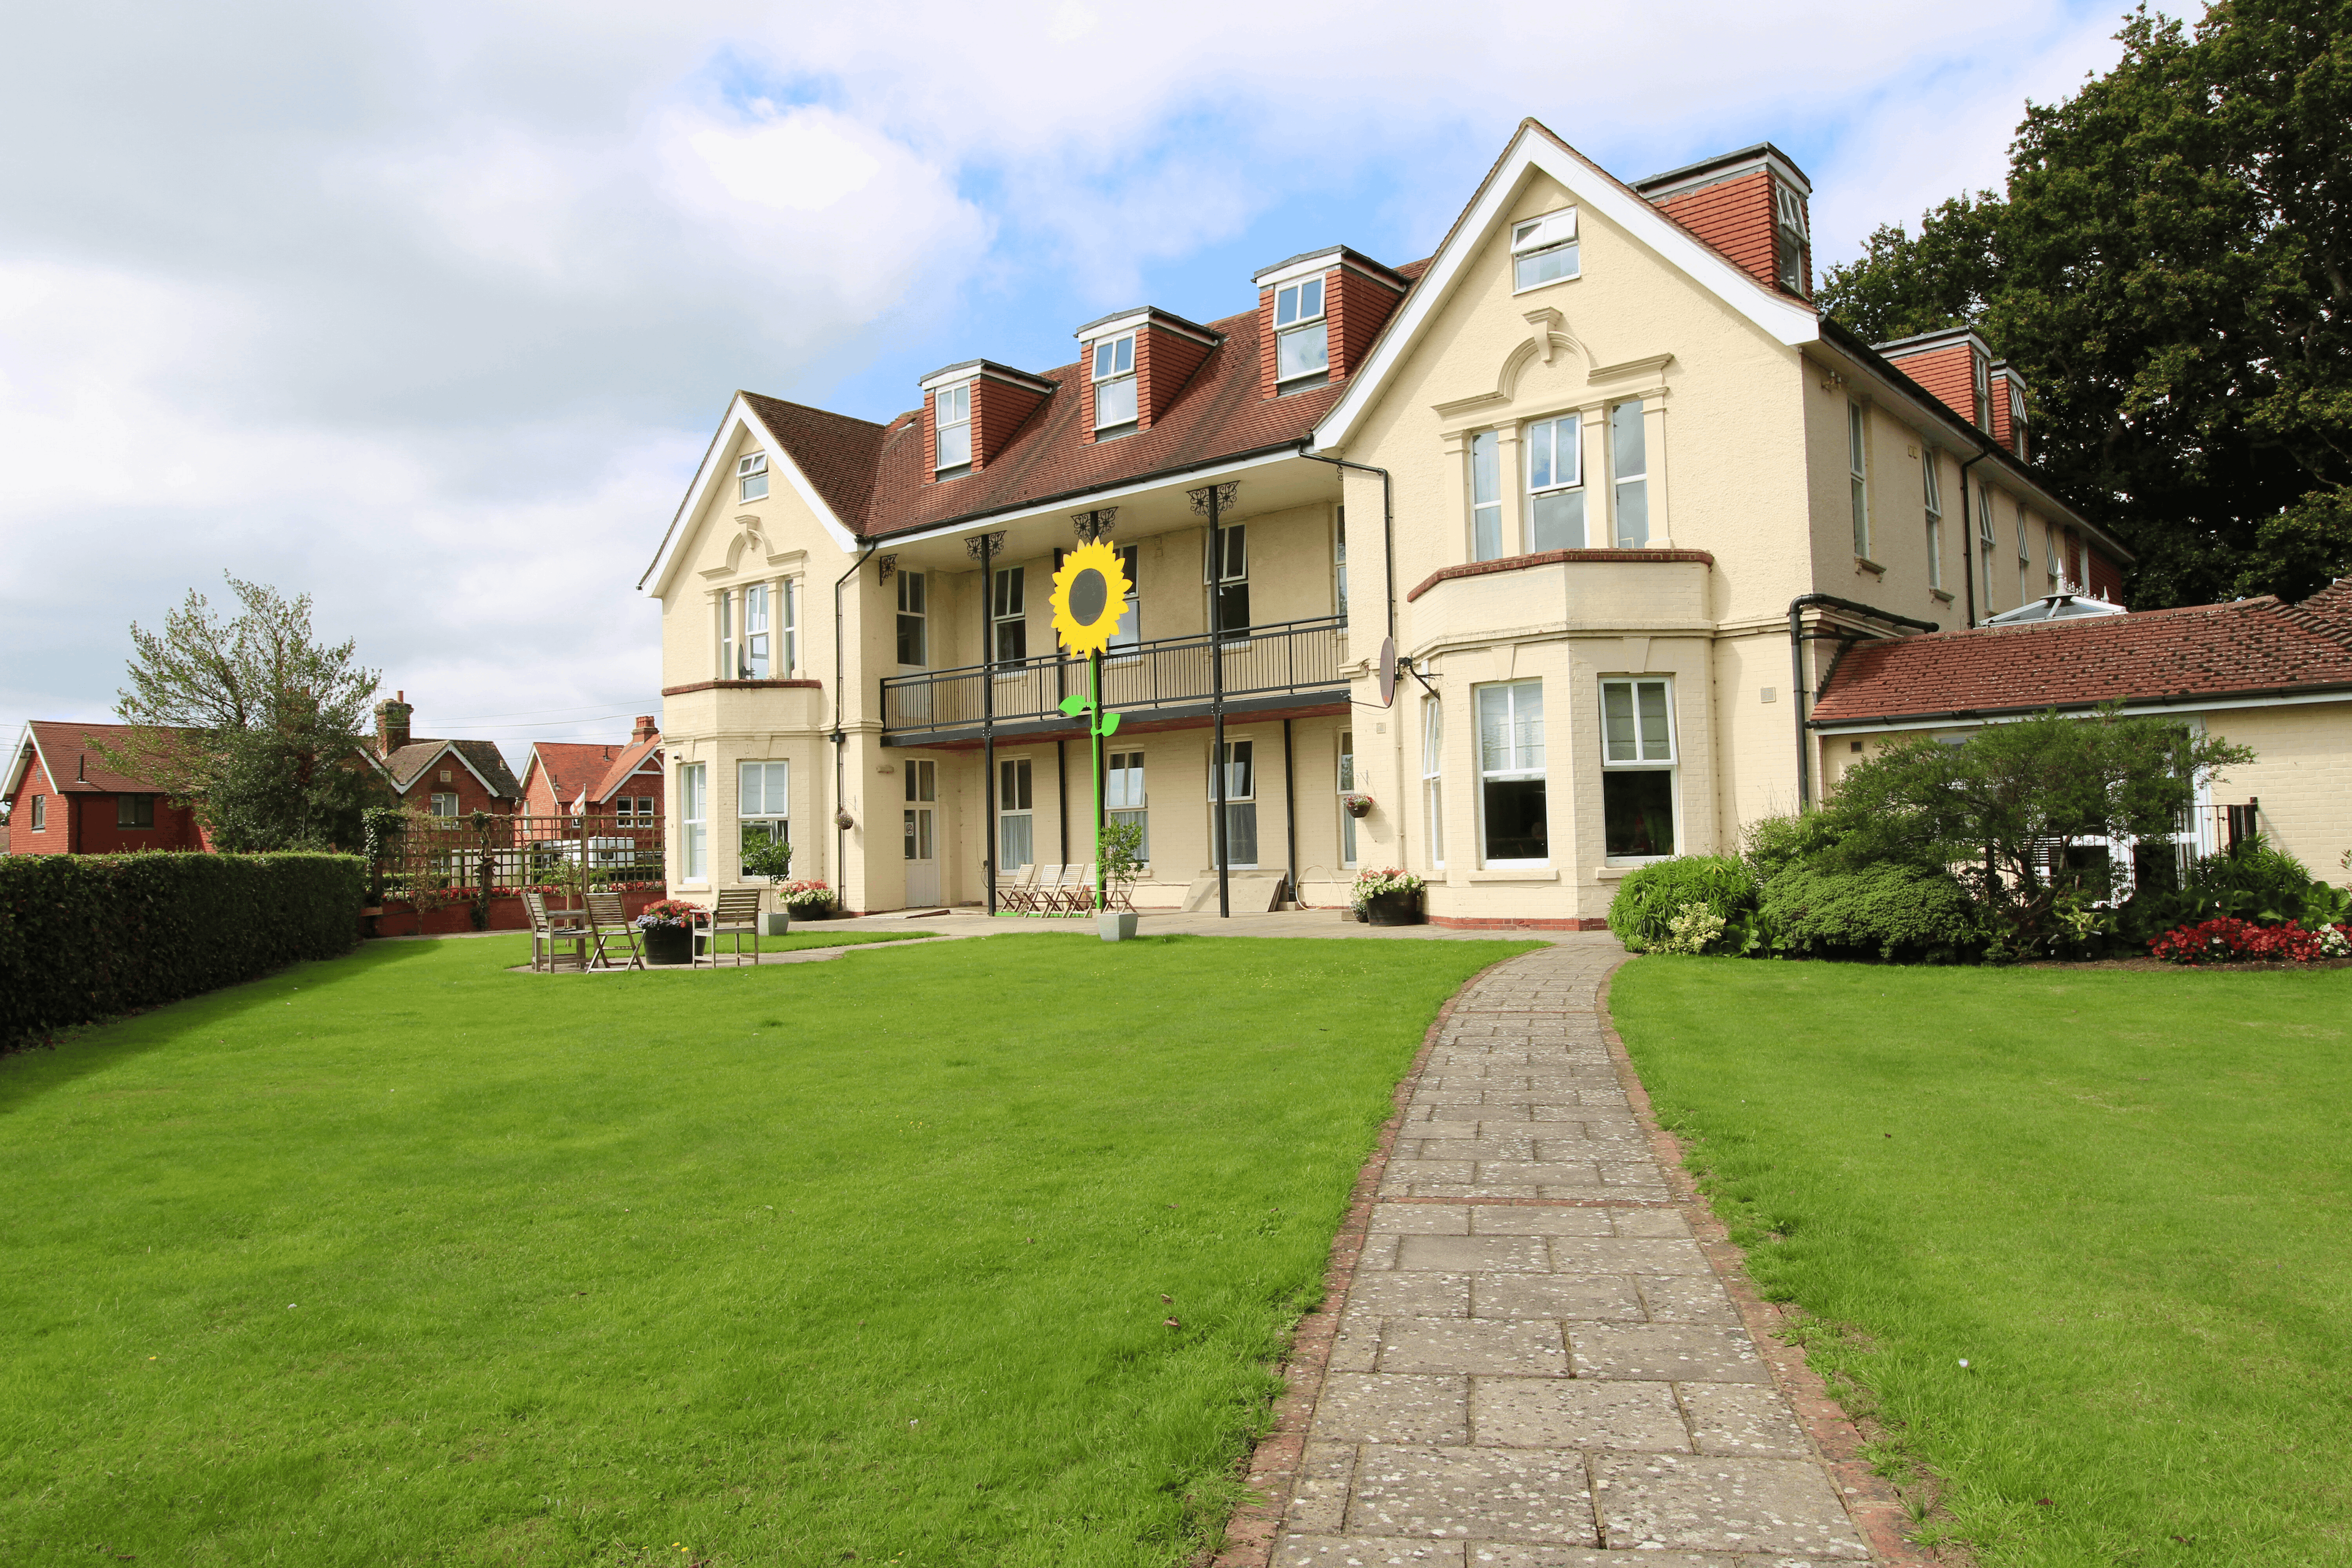 Exterior of Hailsham House in Hailsham, East Sussex